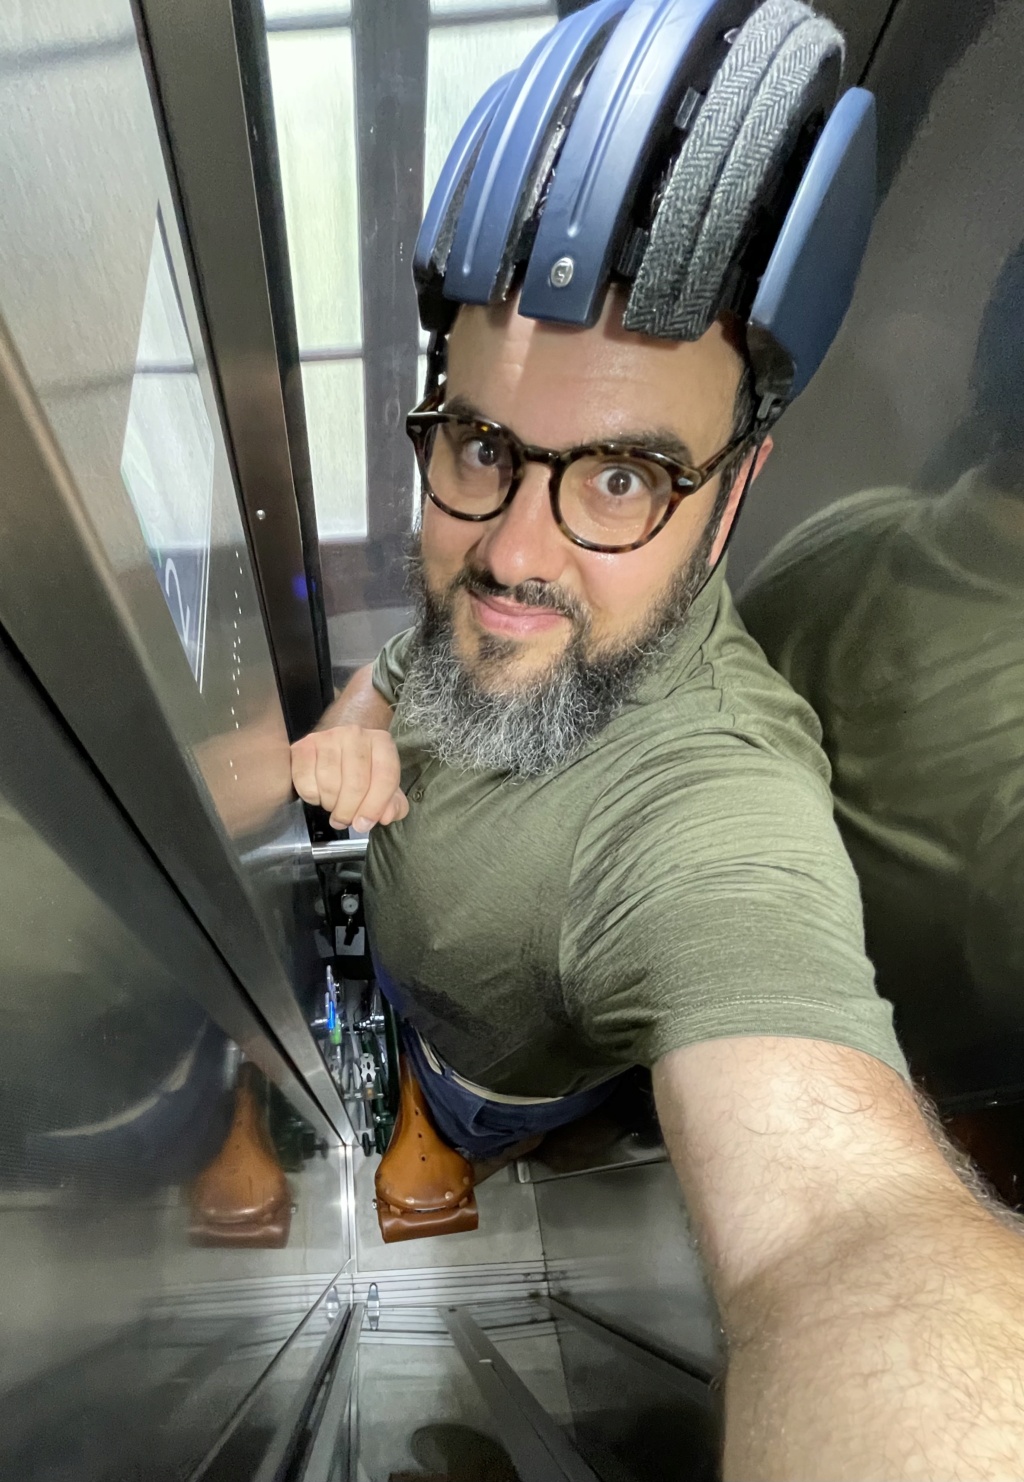 Un Brompton dans un ascenseur atypique 4eaf6d10